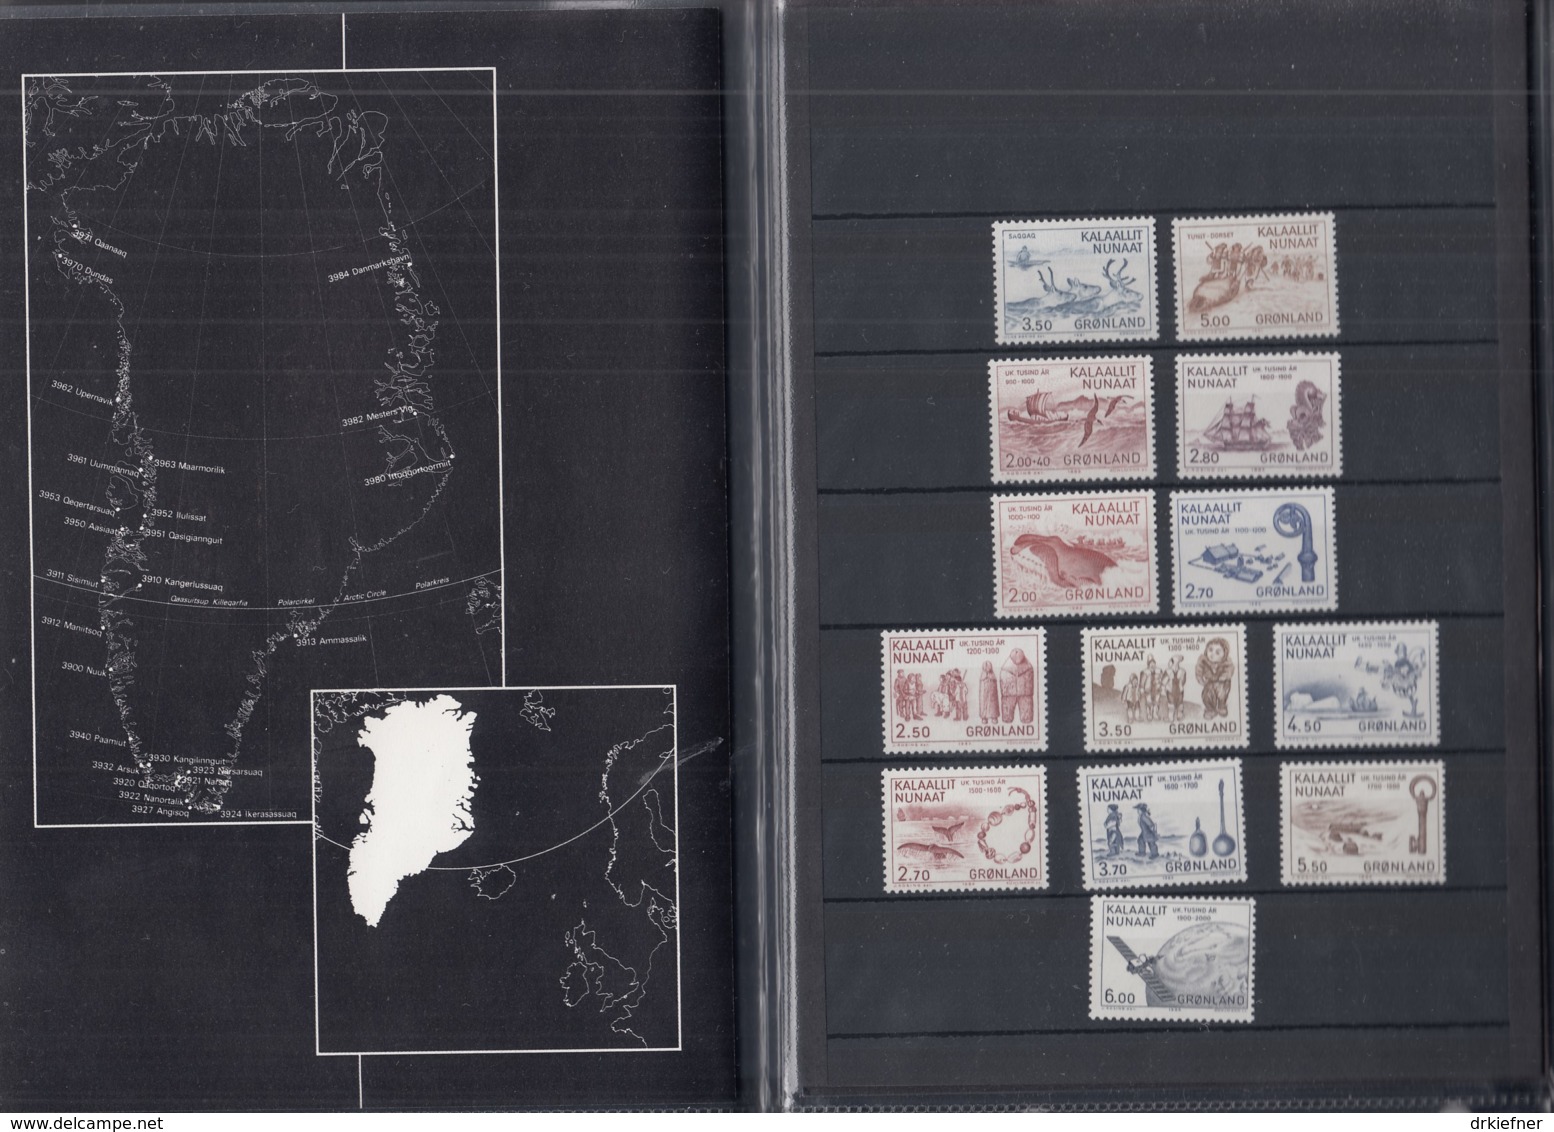 GRÖNLAND, 13 Marken Aus 1981-1985, Postfrisch **, 1000 Jahre Grönland, In Präsentationsmappe - Ungebraucht